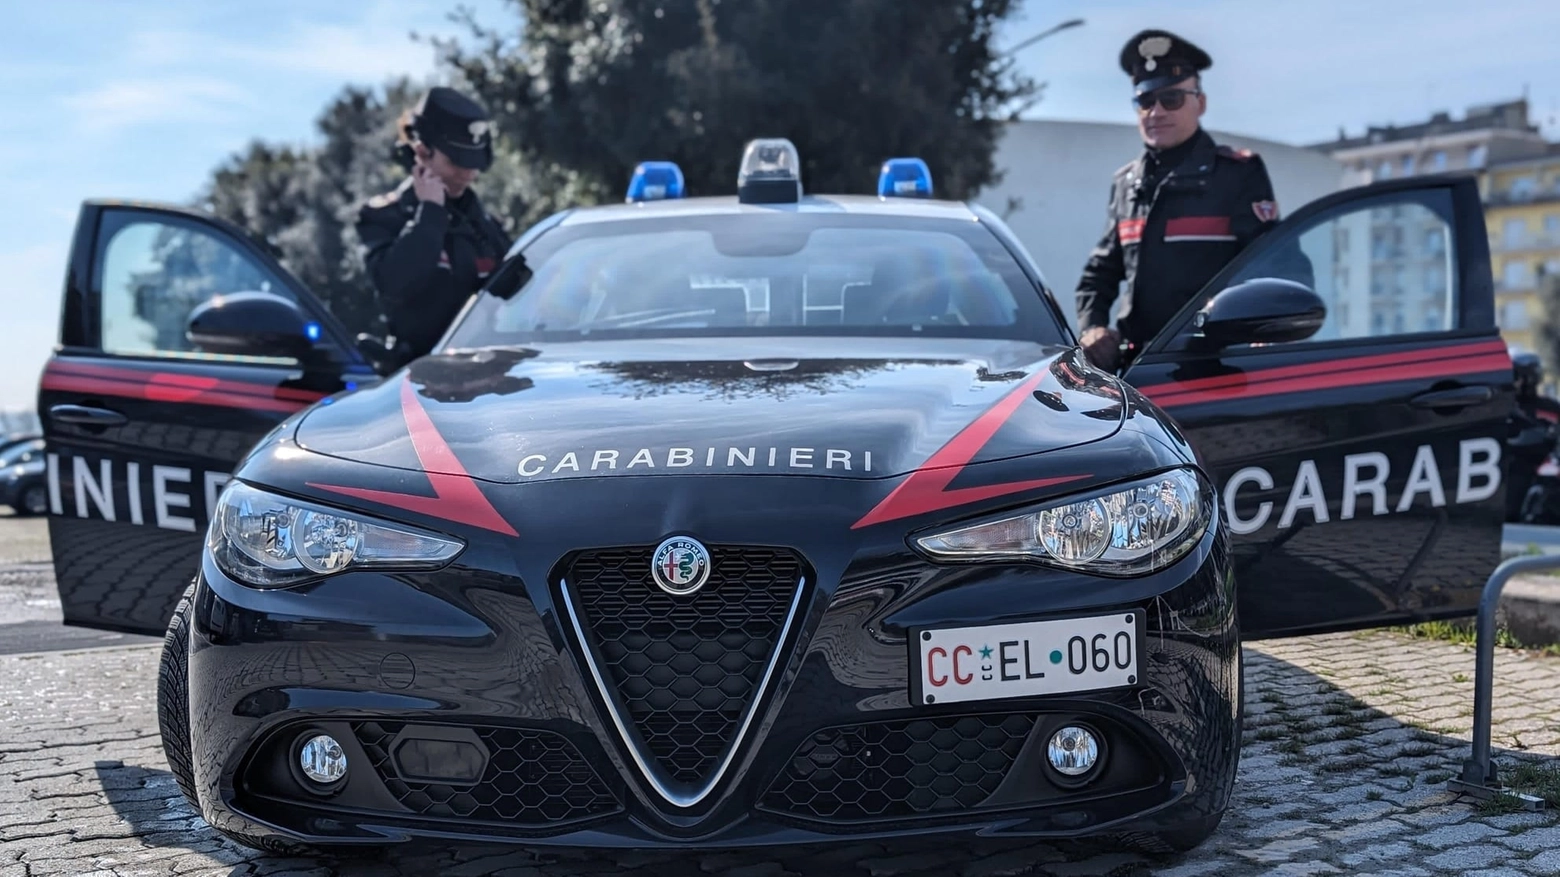 Si sono finti marescialli dei carabinieri per comunicarle false notizie sul figlio. Intervengono i veri carabinieri